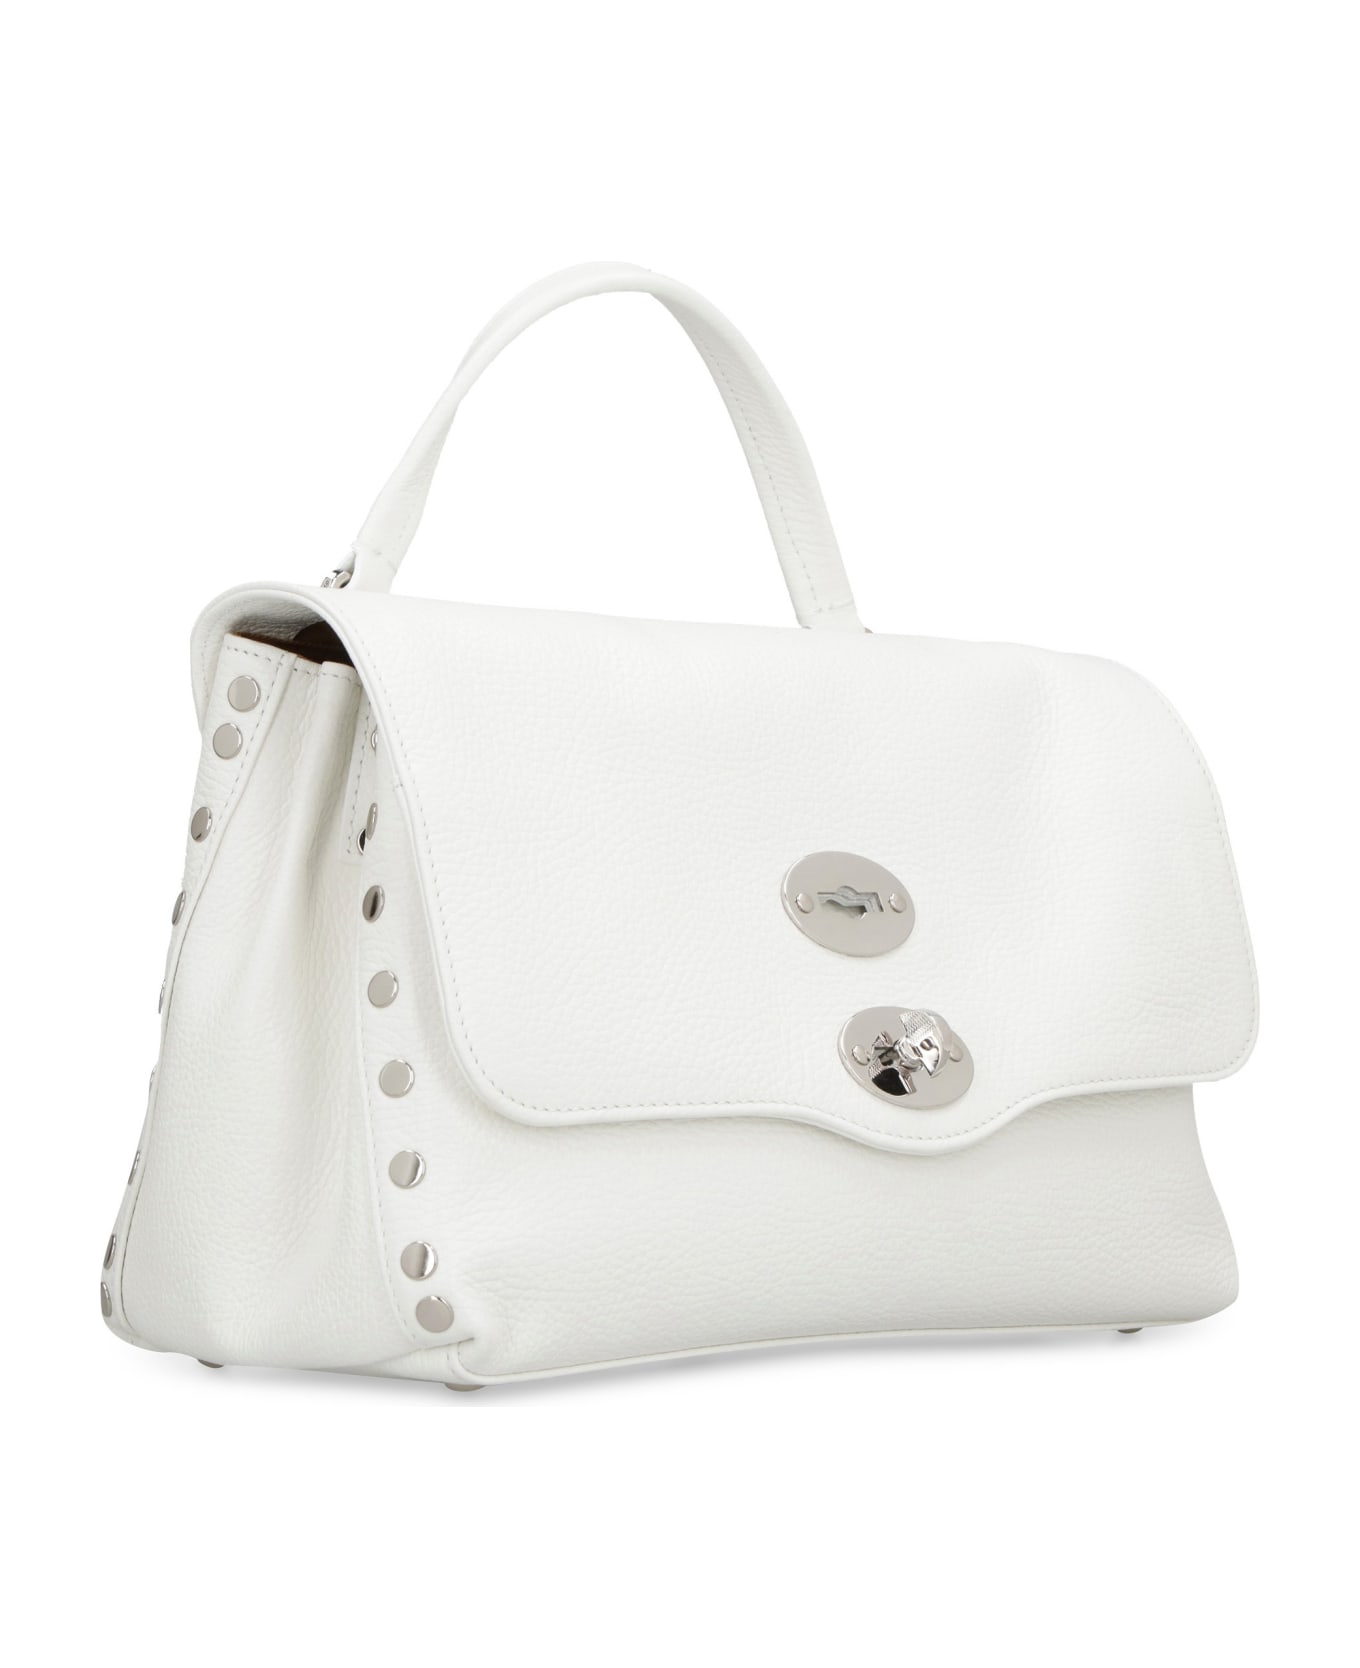 Zanellato Postina S Leather Handbag - Bianco Latte